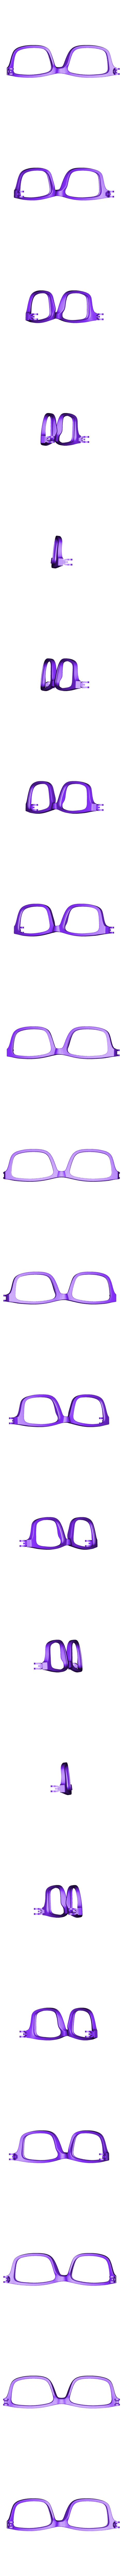 VirtualTryOn_Glasses_F.stl Download free STL file VirtualTryOn.fr Eyeglass frame • 3D printing object, Sacha_Zacaropoulos